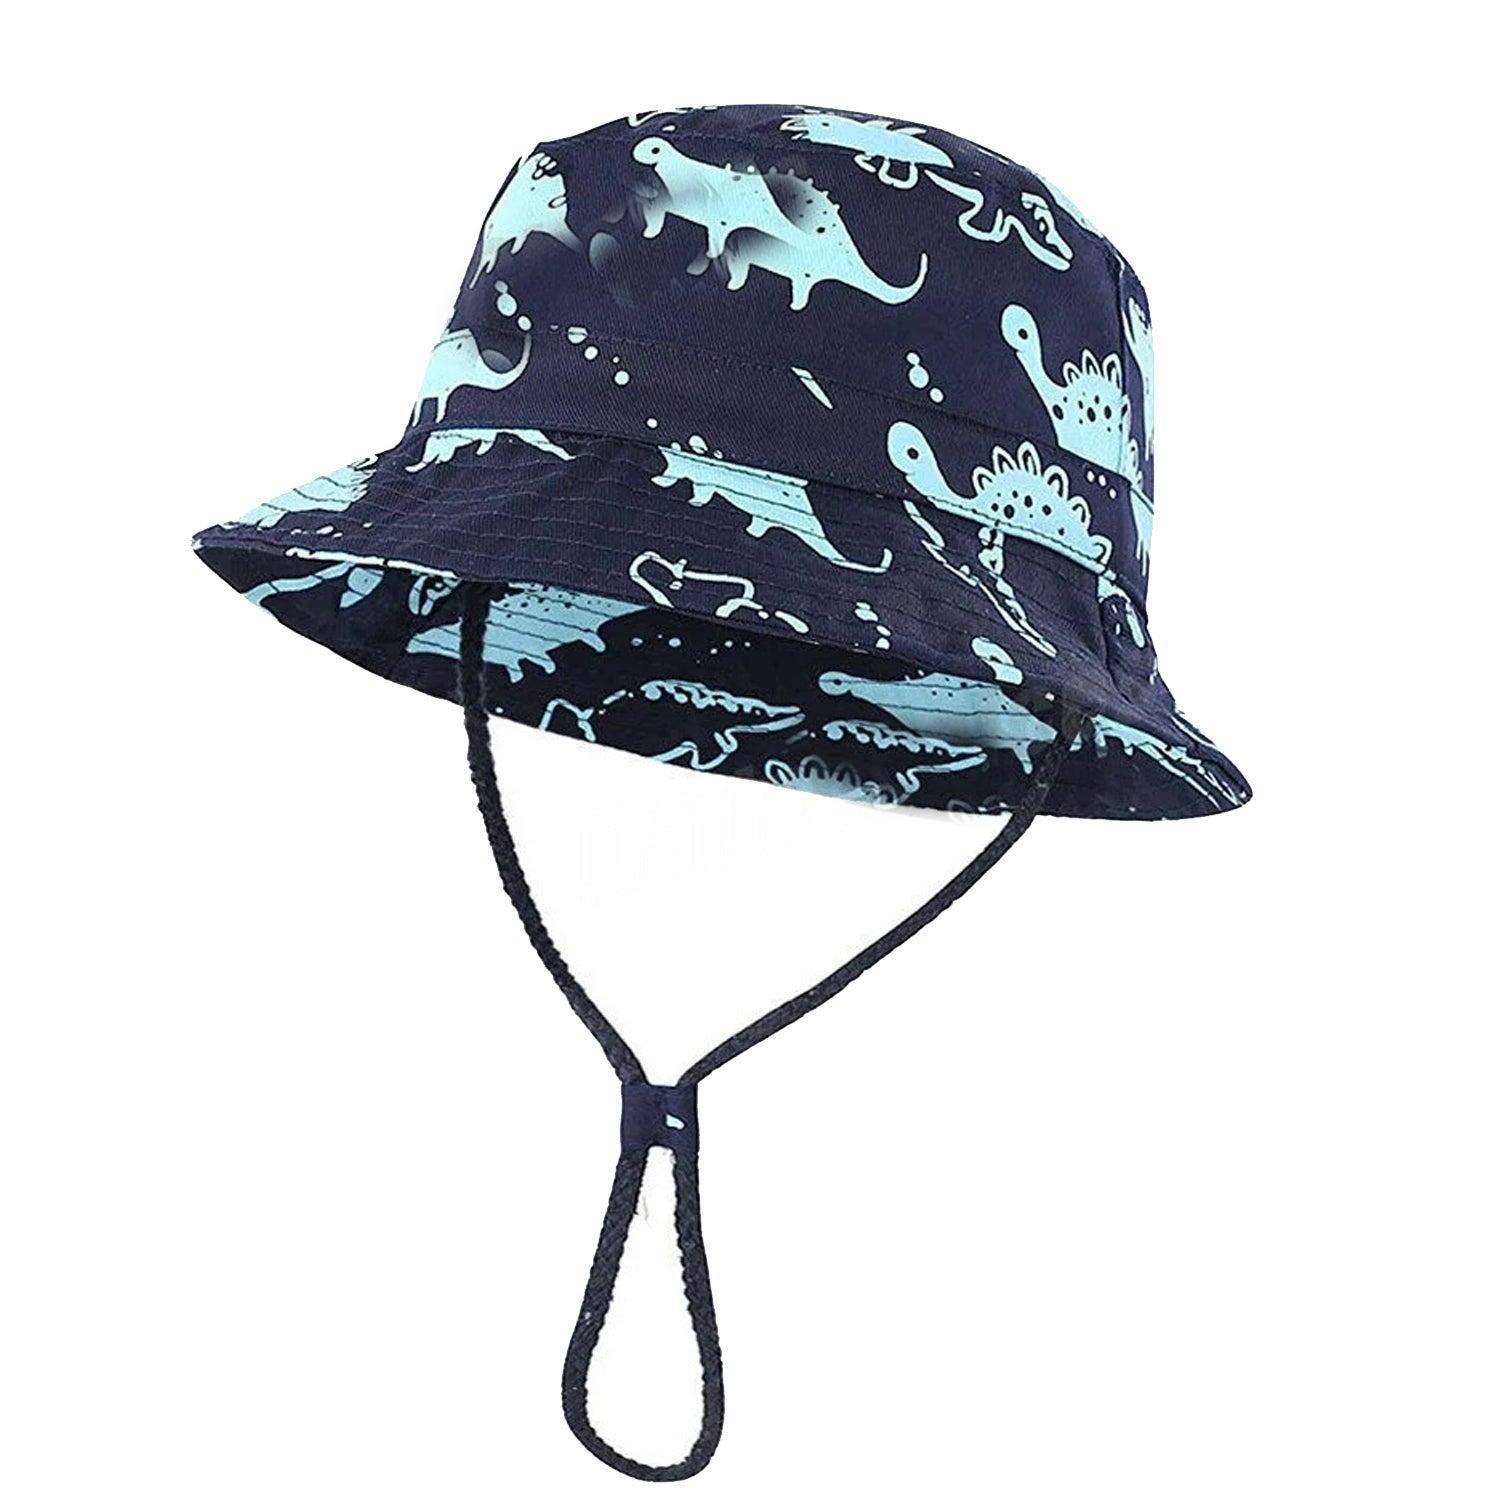 Kid's Bucket Hat Cotton Summer Beach Sun Cap + Adjustable Strap Cartoon Dinosaur